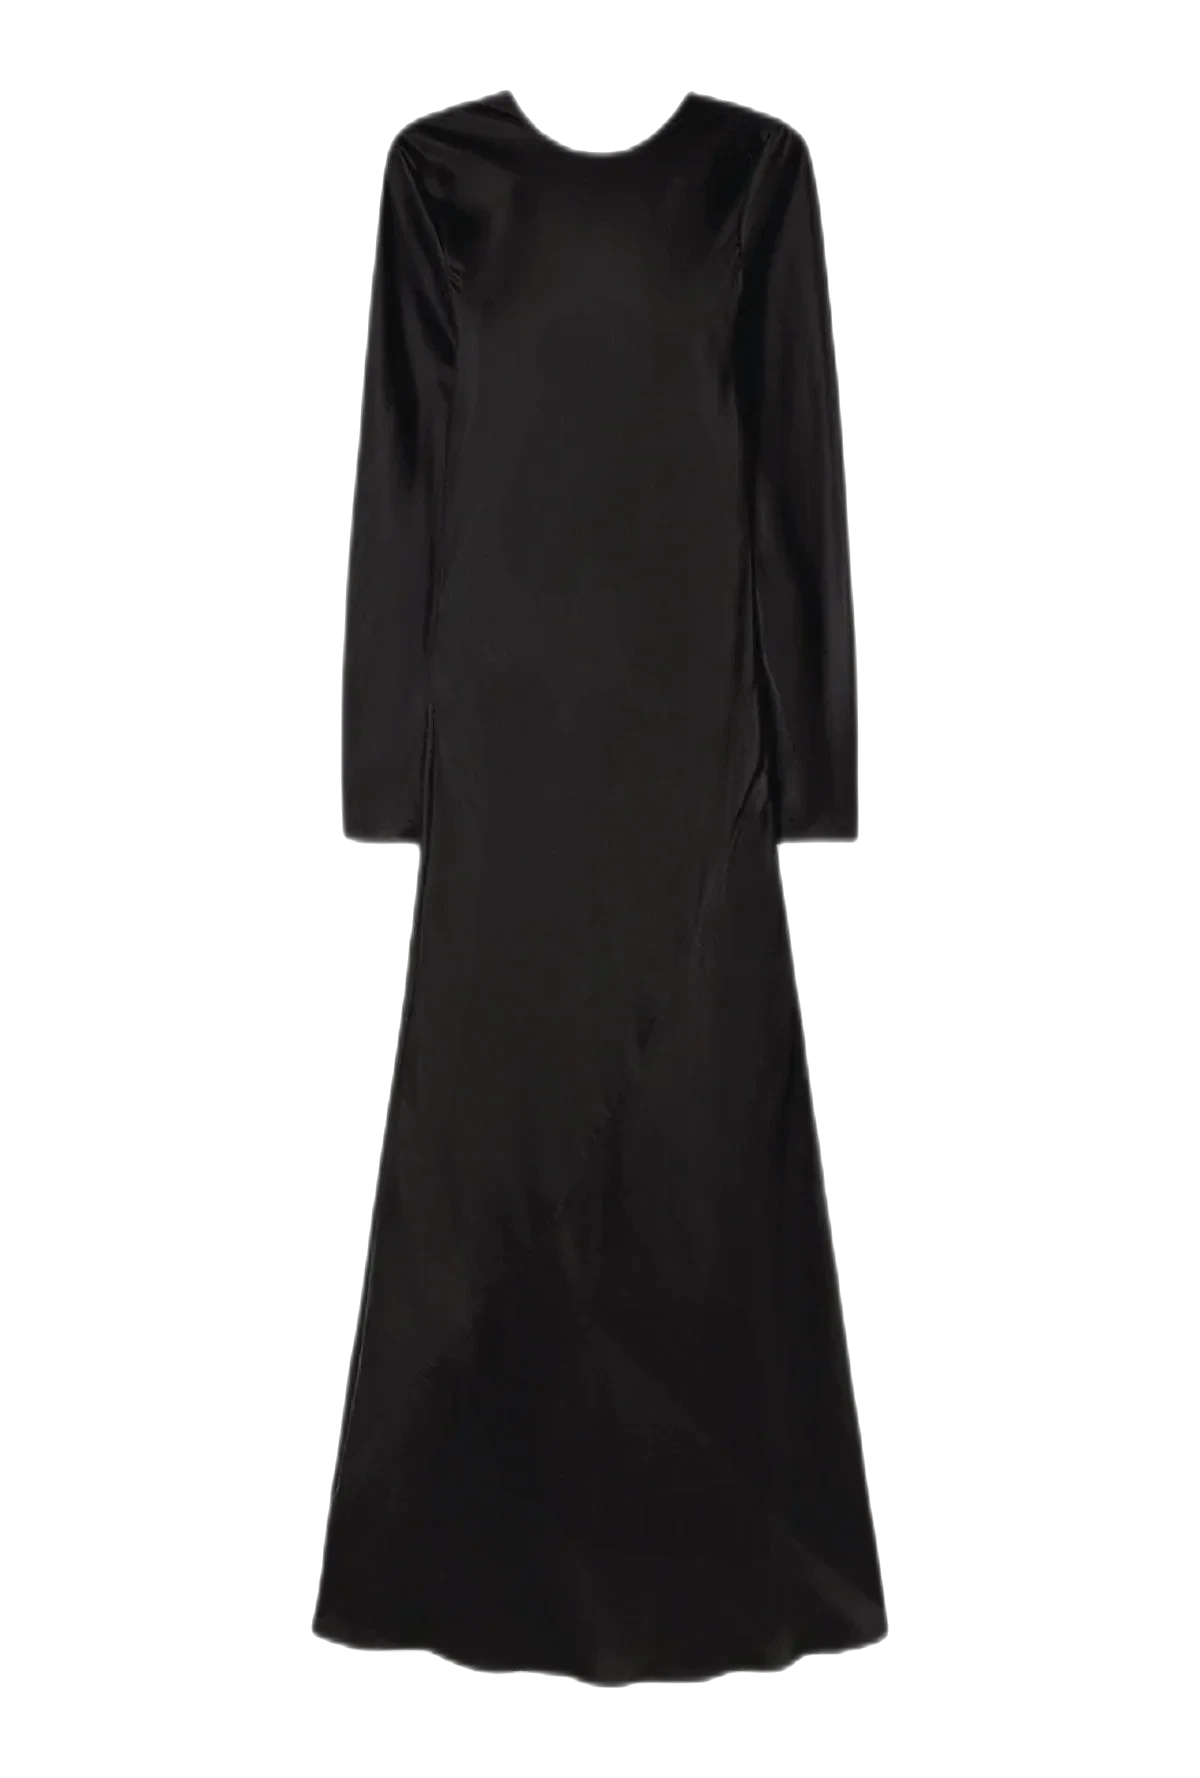 HAisTsiAH Dress Dress - Long Sleeves, Full Length